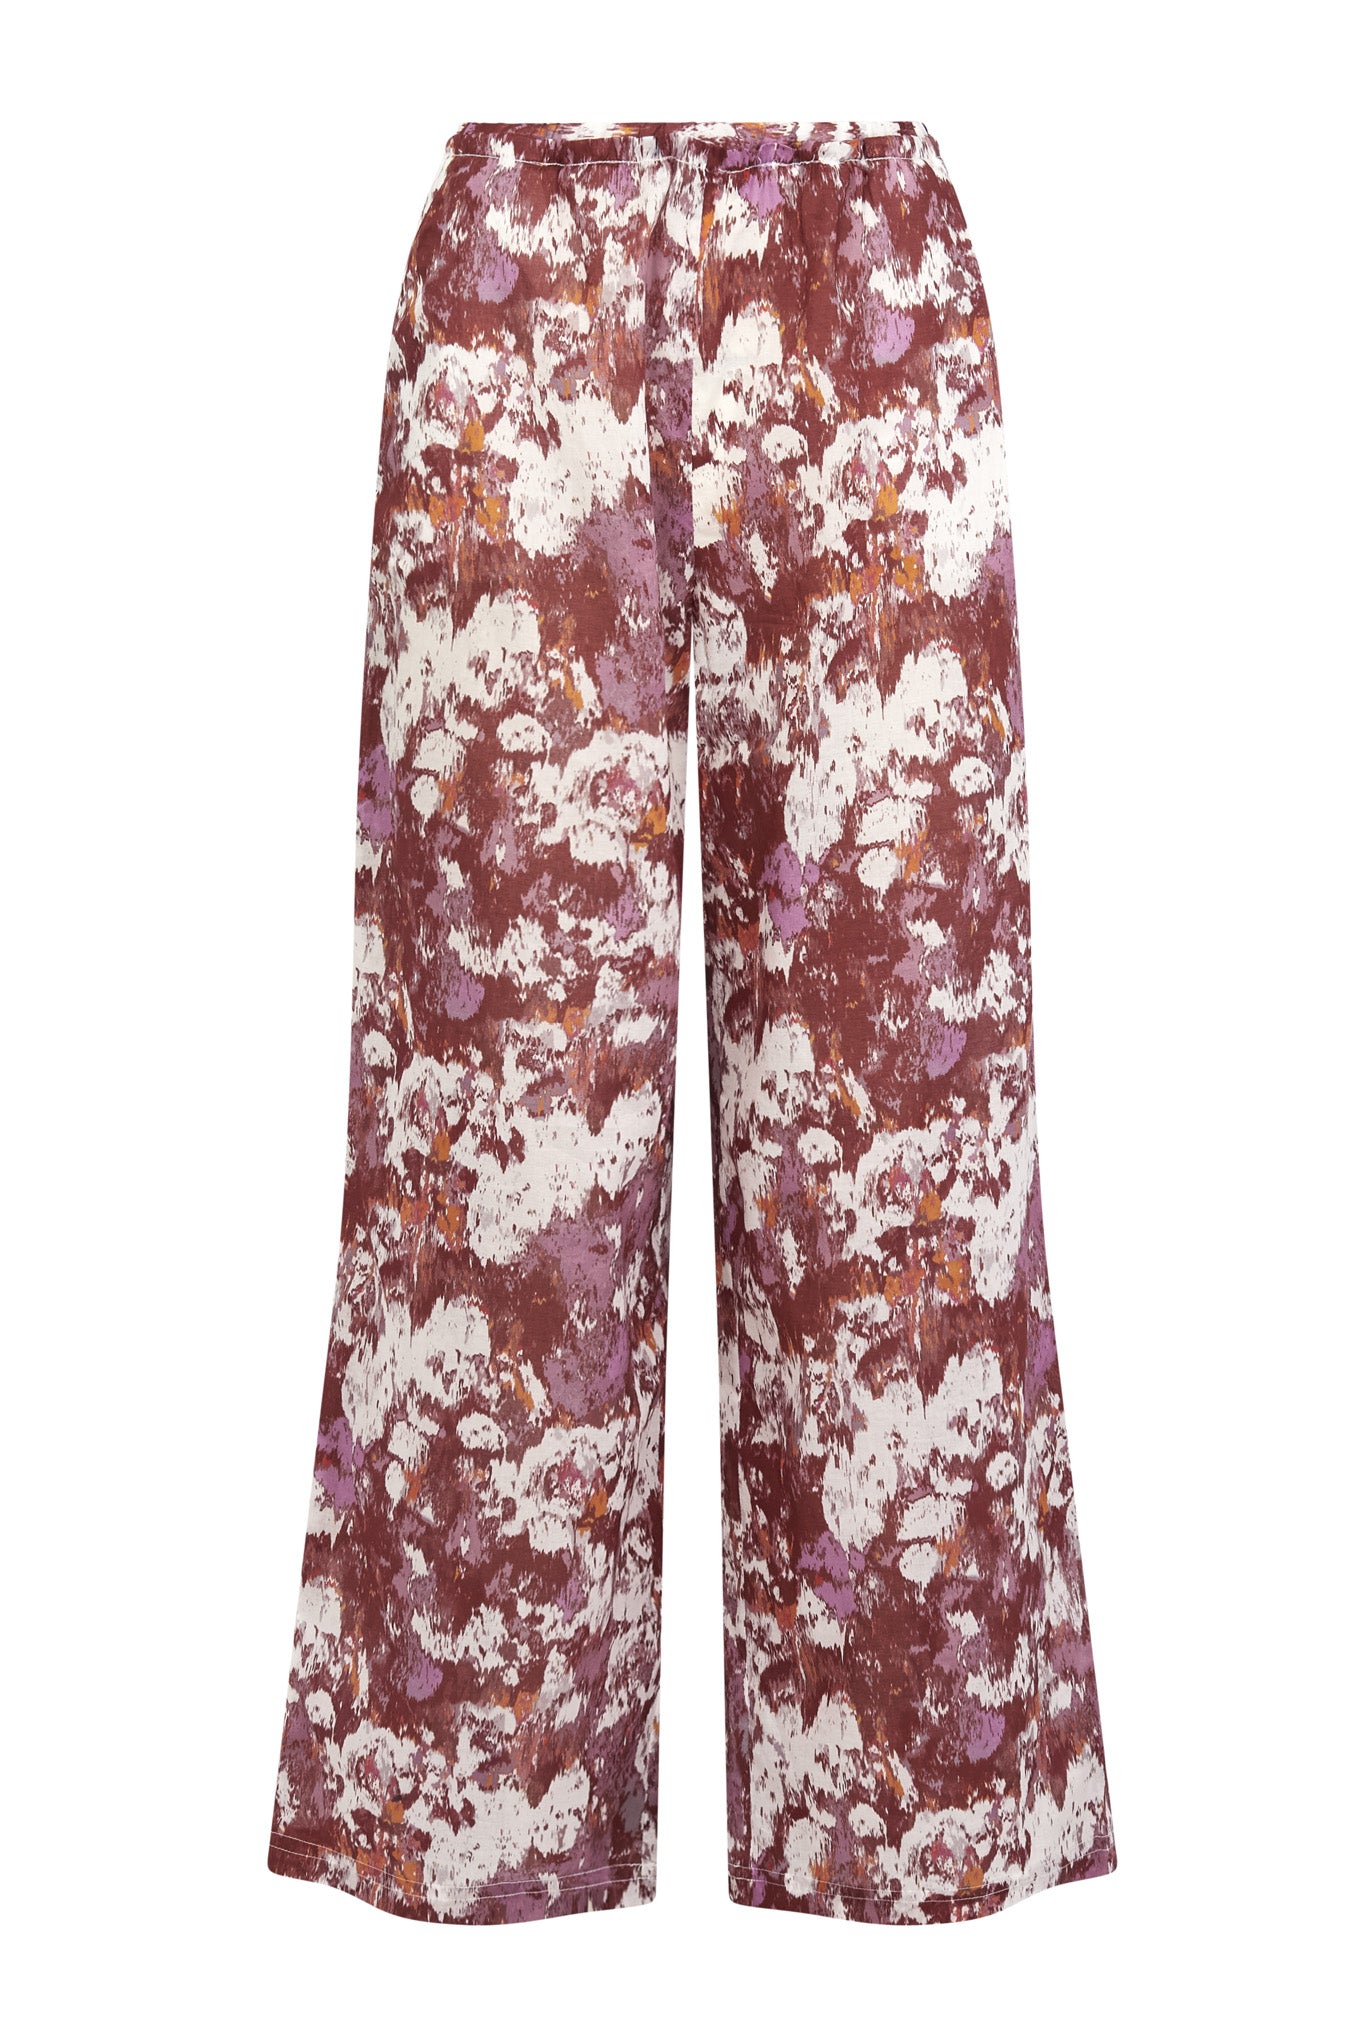 Women’s Nari Palazzo Organic Cotton Trouser - Poppy Red Medium Komodo